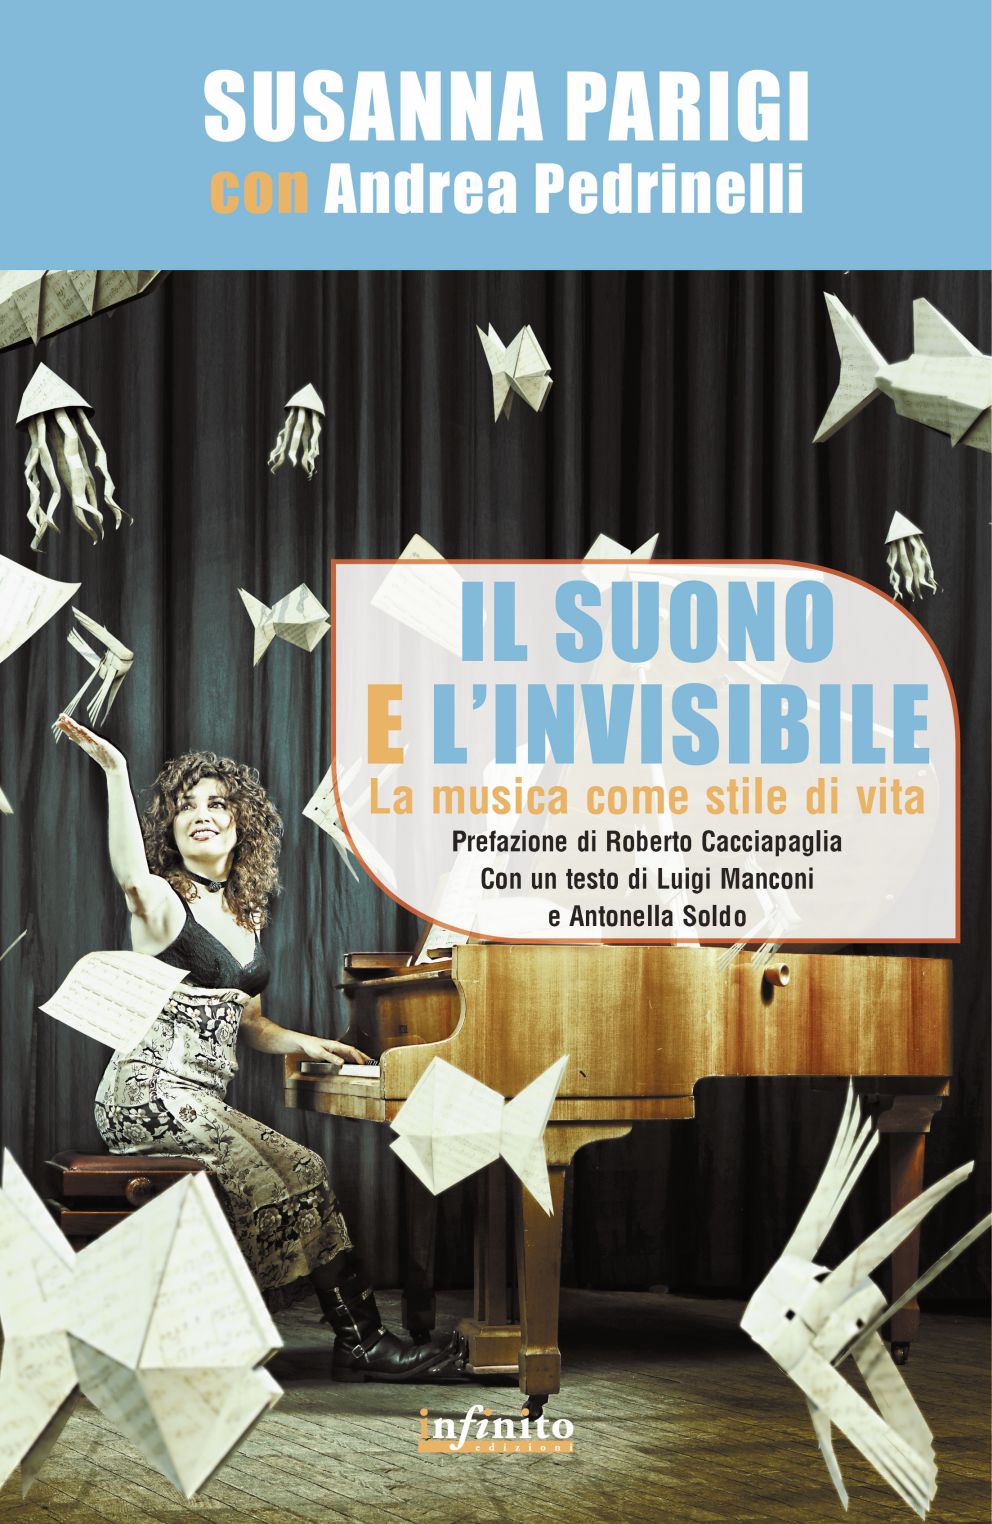  Presentazione del libro di Susanna Parigi “Il suono e l’invisibile – La musica come stile di vita” alla Feltrinelli Point di Arezzo